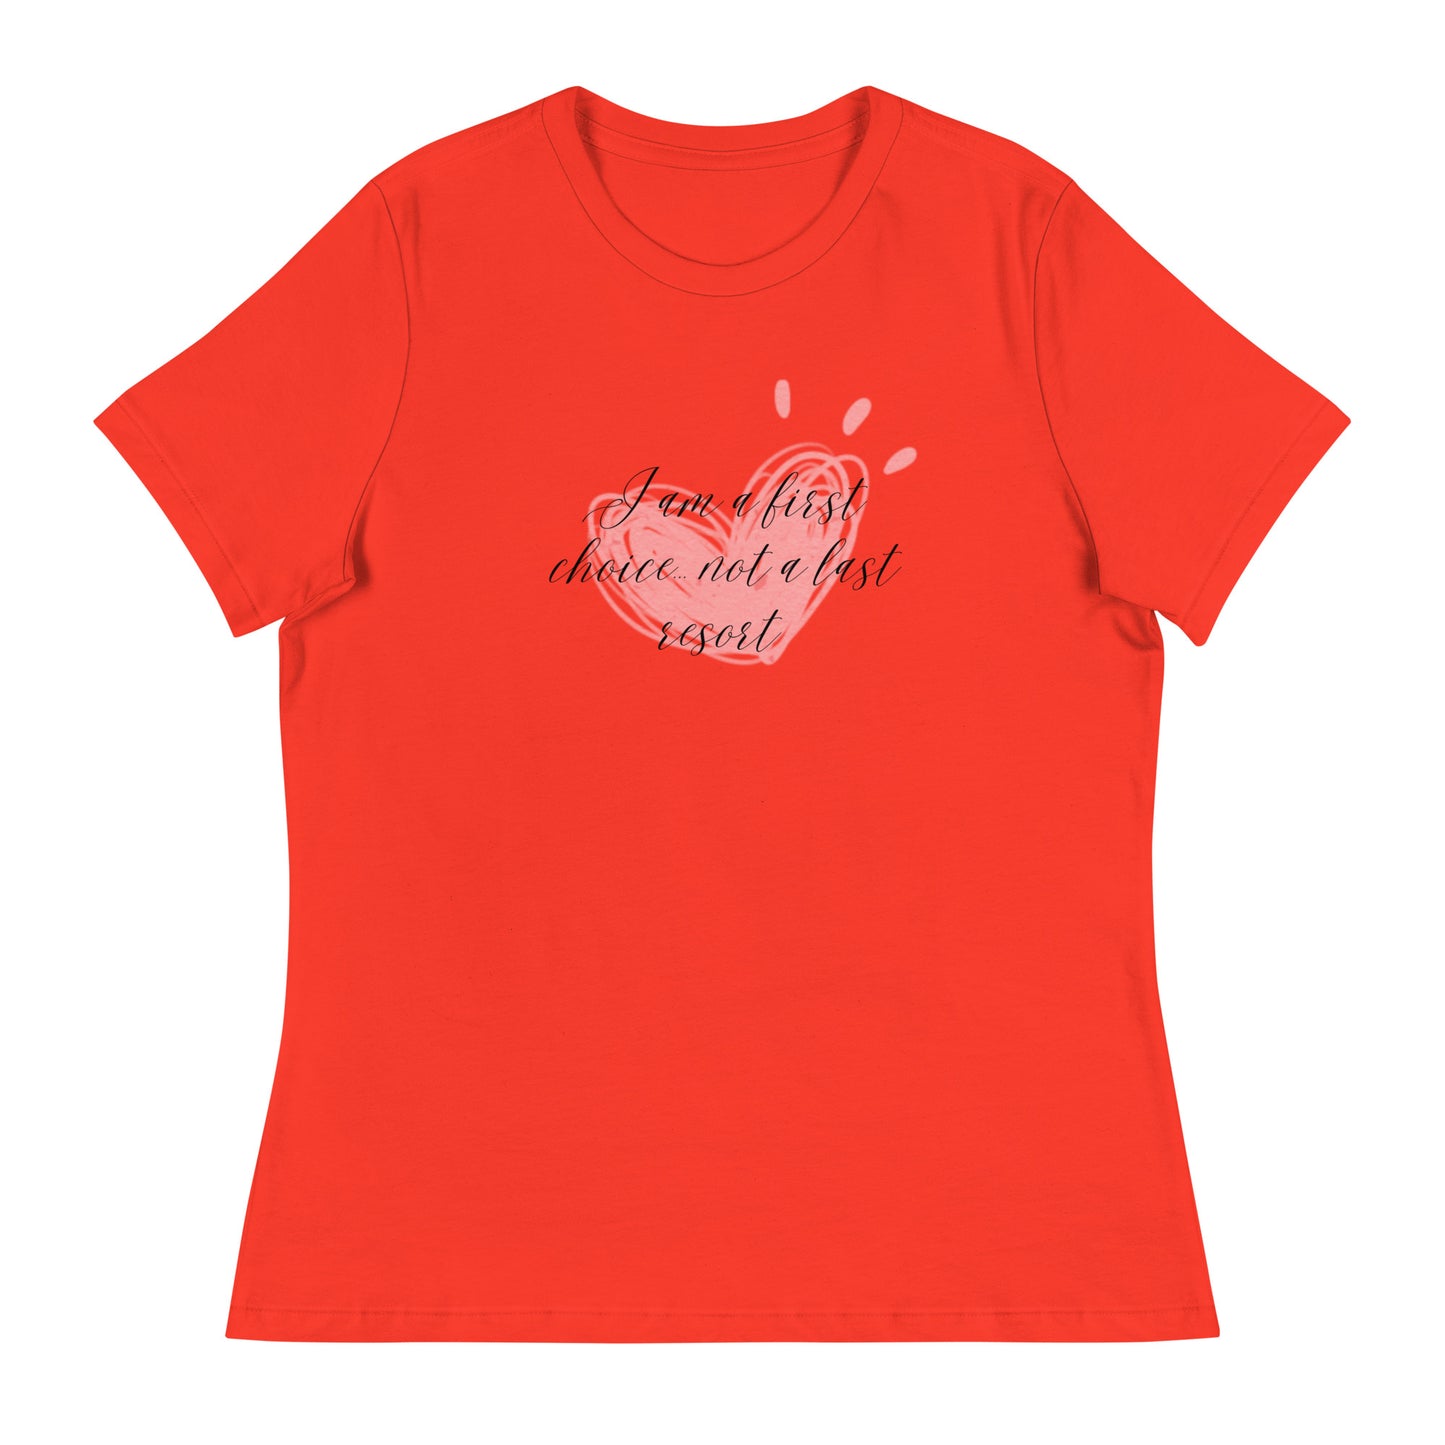 Women's Relaxed T-Shirt - First Choice Pink Heart - I'm A First Choice Not a Last Resort T-shirt Stylin' Spirit Poppy S 